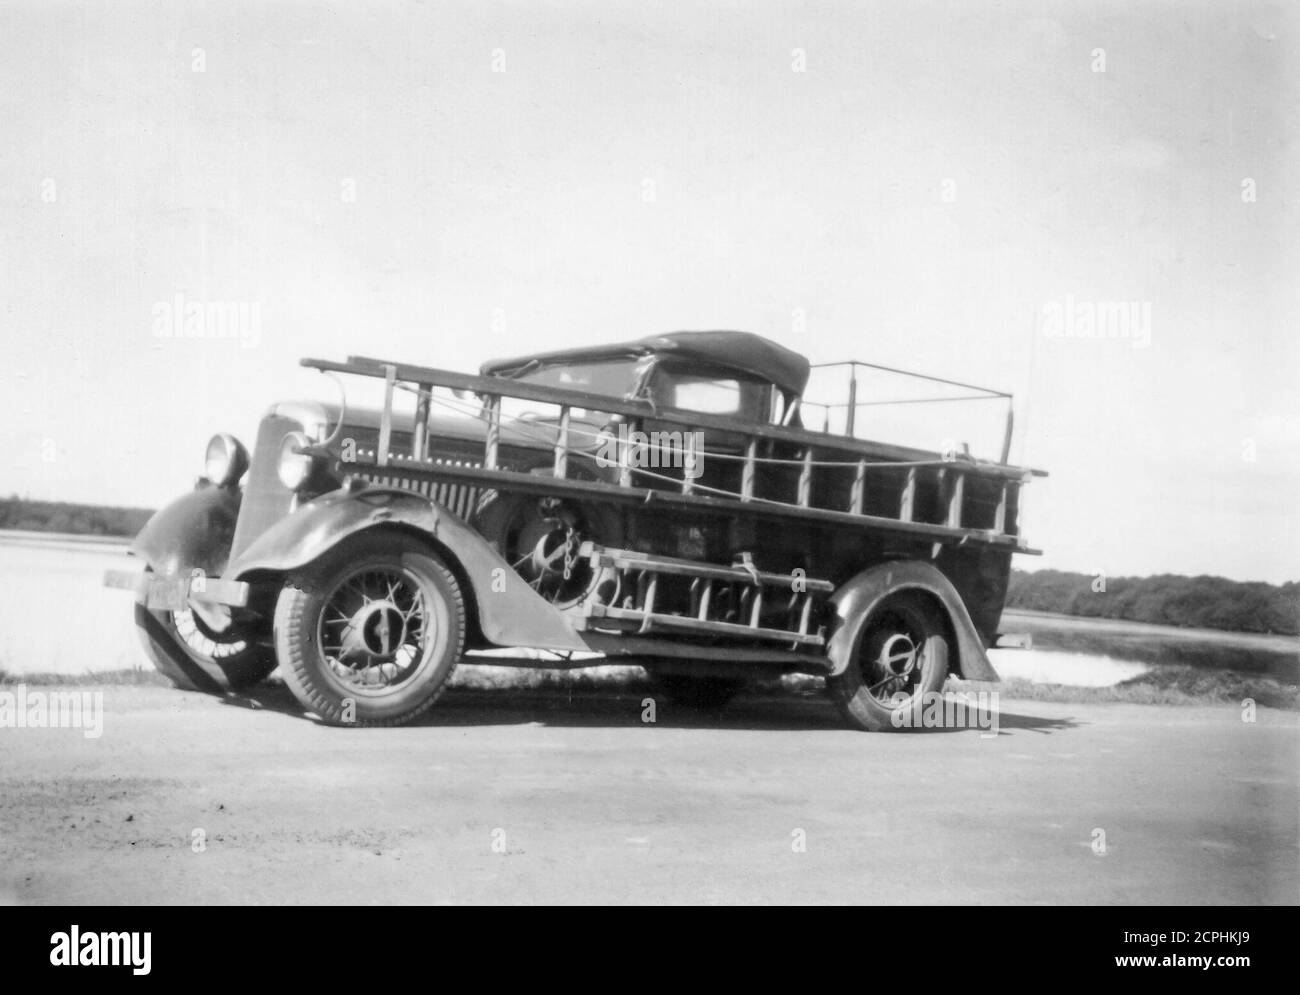 Un conseil du comté de Sydney, un véhicule Morris 8 anglais made1935 avec un châssis utilitaire et une housse de cabine à toit souple fabriqués en Australie. Il s'agissait d'un véhicule de l'opérateur du district du Conseil qui transportait des échelles en bois du côté passager, ce qui n'était pas un problème parce qu'il n'était utilisé que par un seul conducteur/travailleur à la fois. L'emplacement de la prise de vue n'est pas disponible mais peut être près de Rhodes à Sydney où le conducteur du véhicule vivait à l'époque. Le véhicule avait un petit feu de recherche monté sur la porte du conducteur et était en contact radio avec le siège social. Banque D'Images